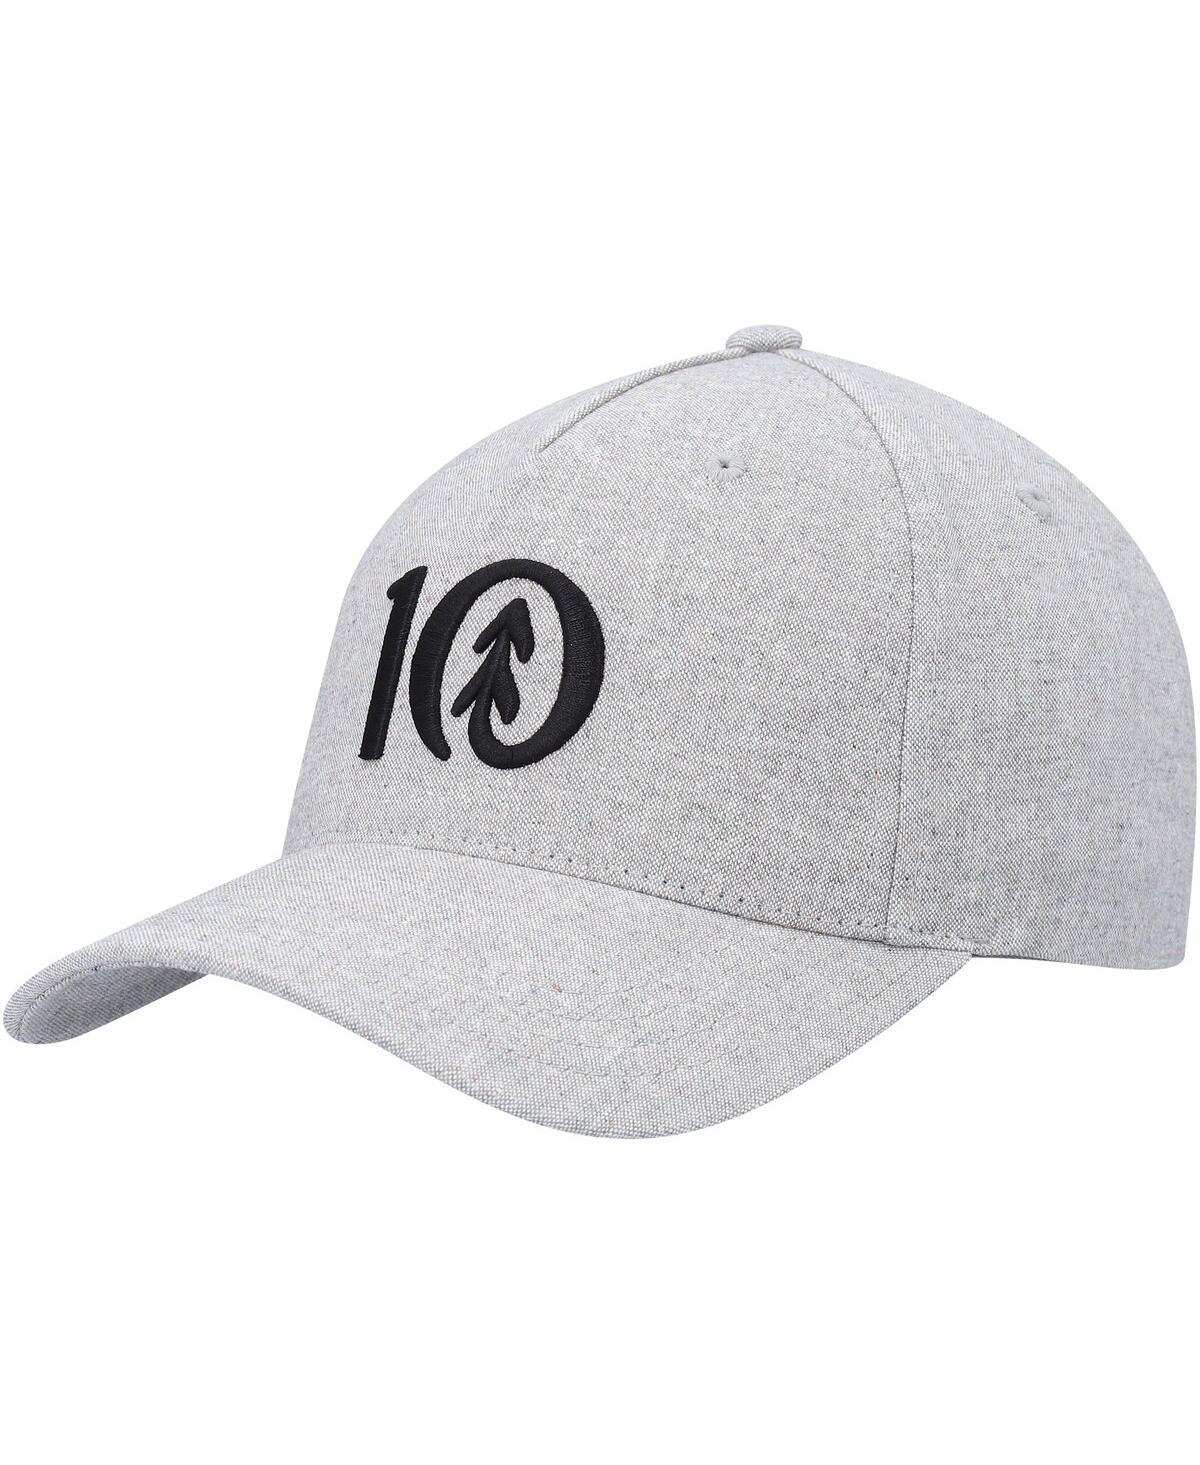 Men's tentree Heathered Gray Logo Altitude Snapback Hat - Heathered Gray